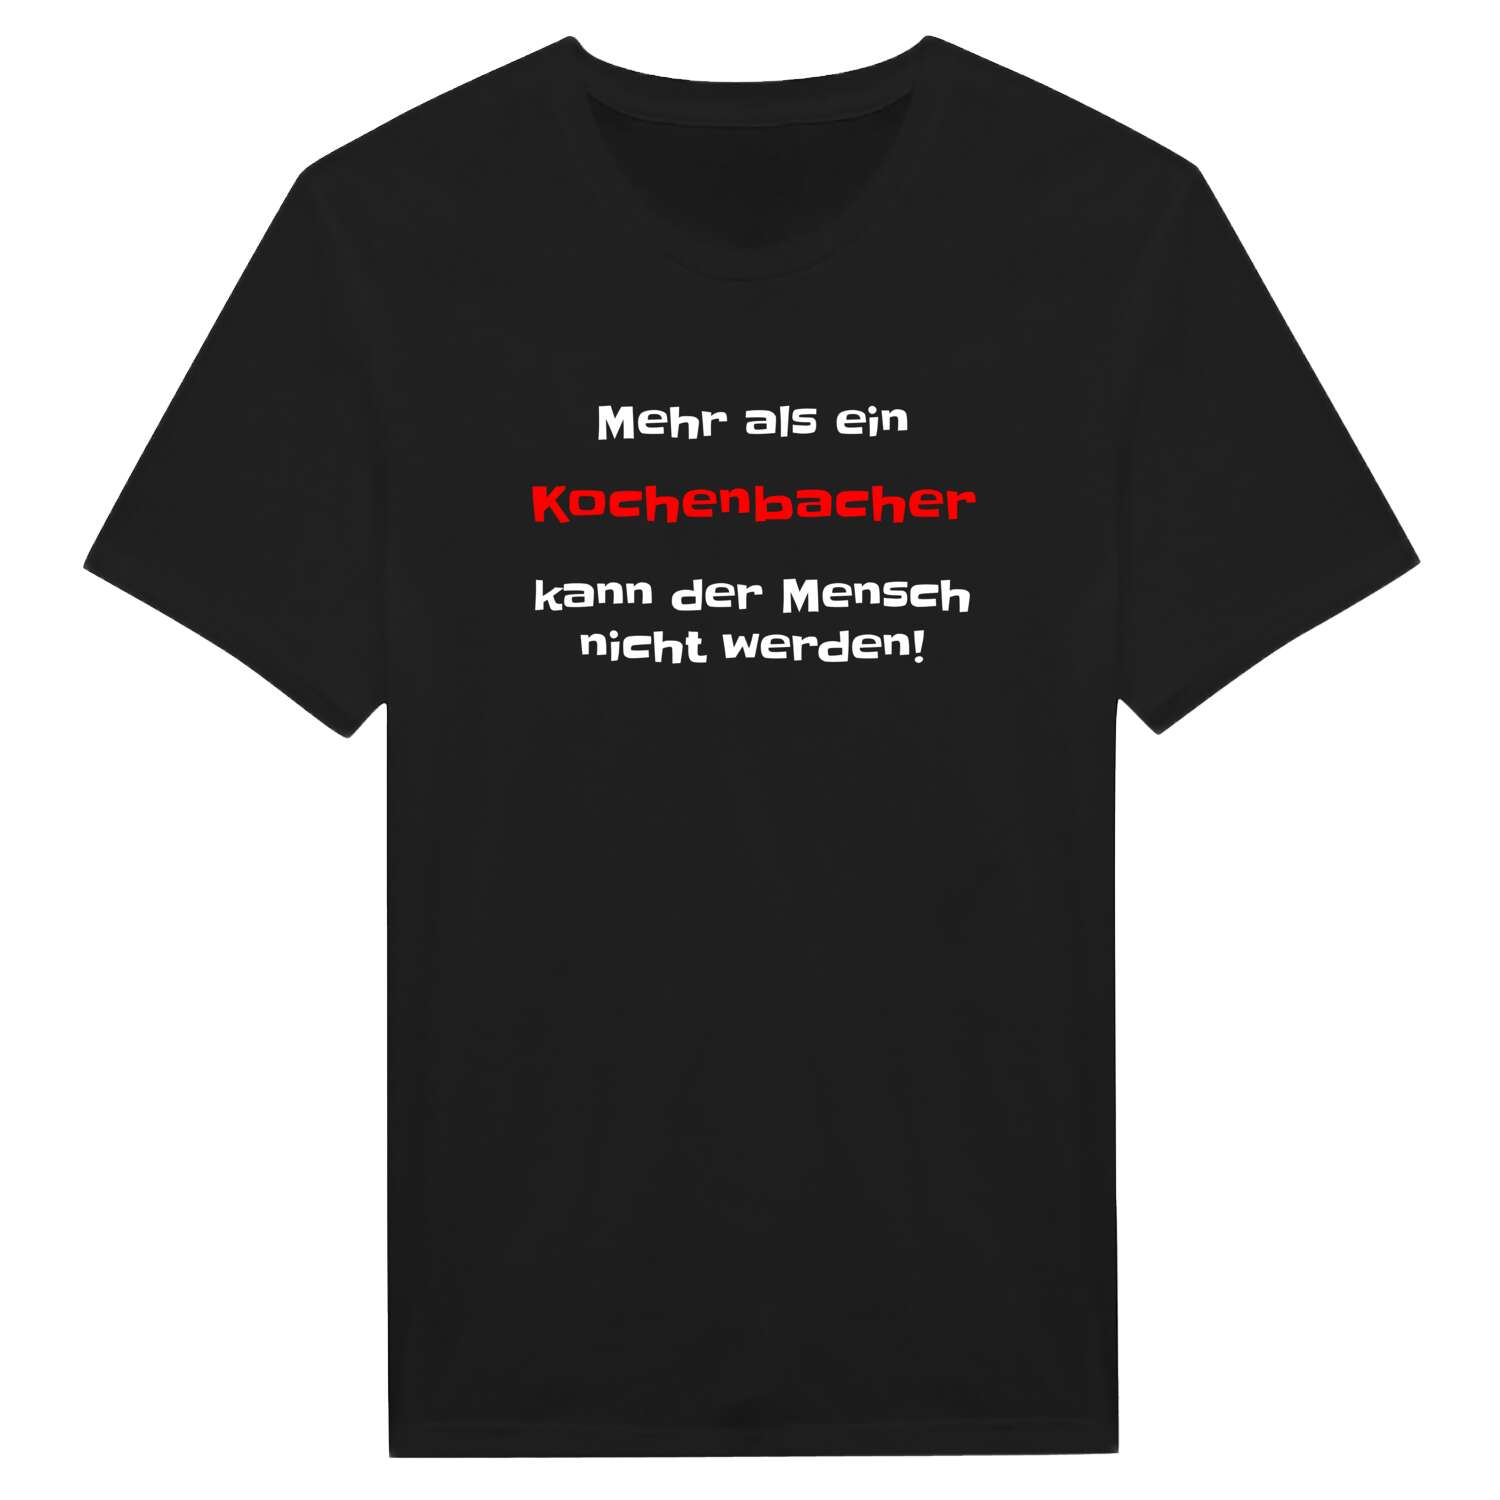 Kochenbach T-Shirt »Mehr als ein«